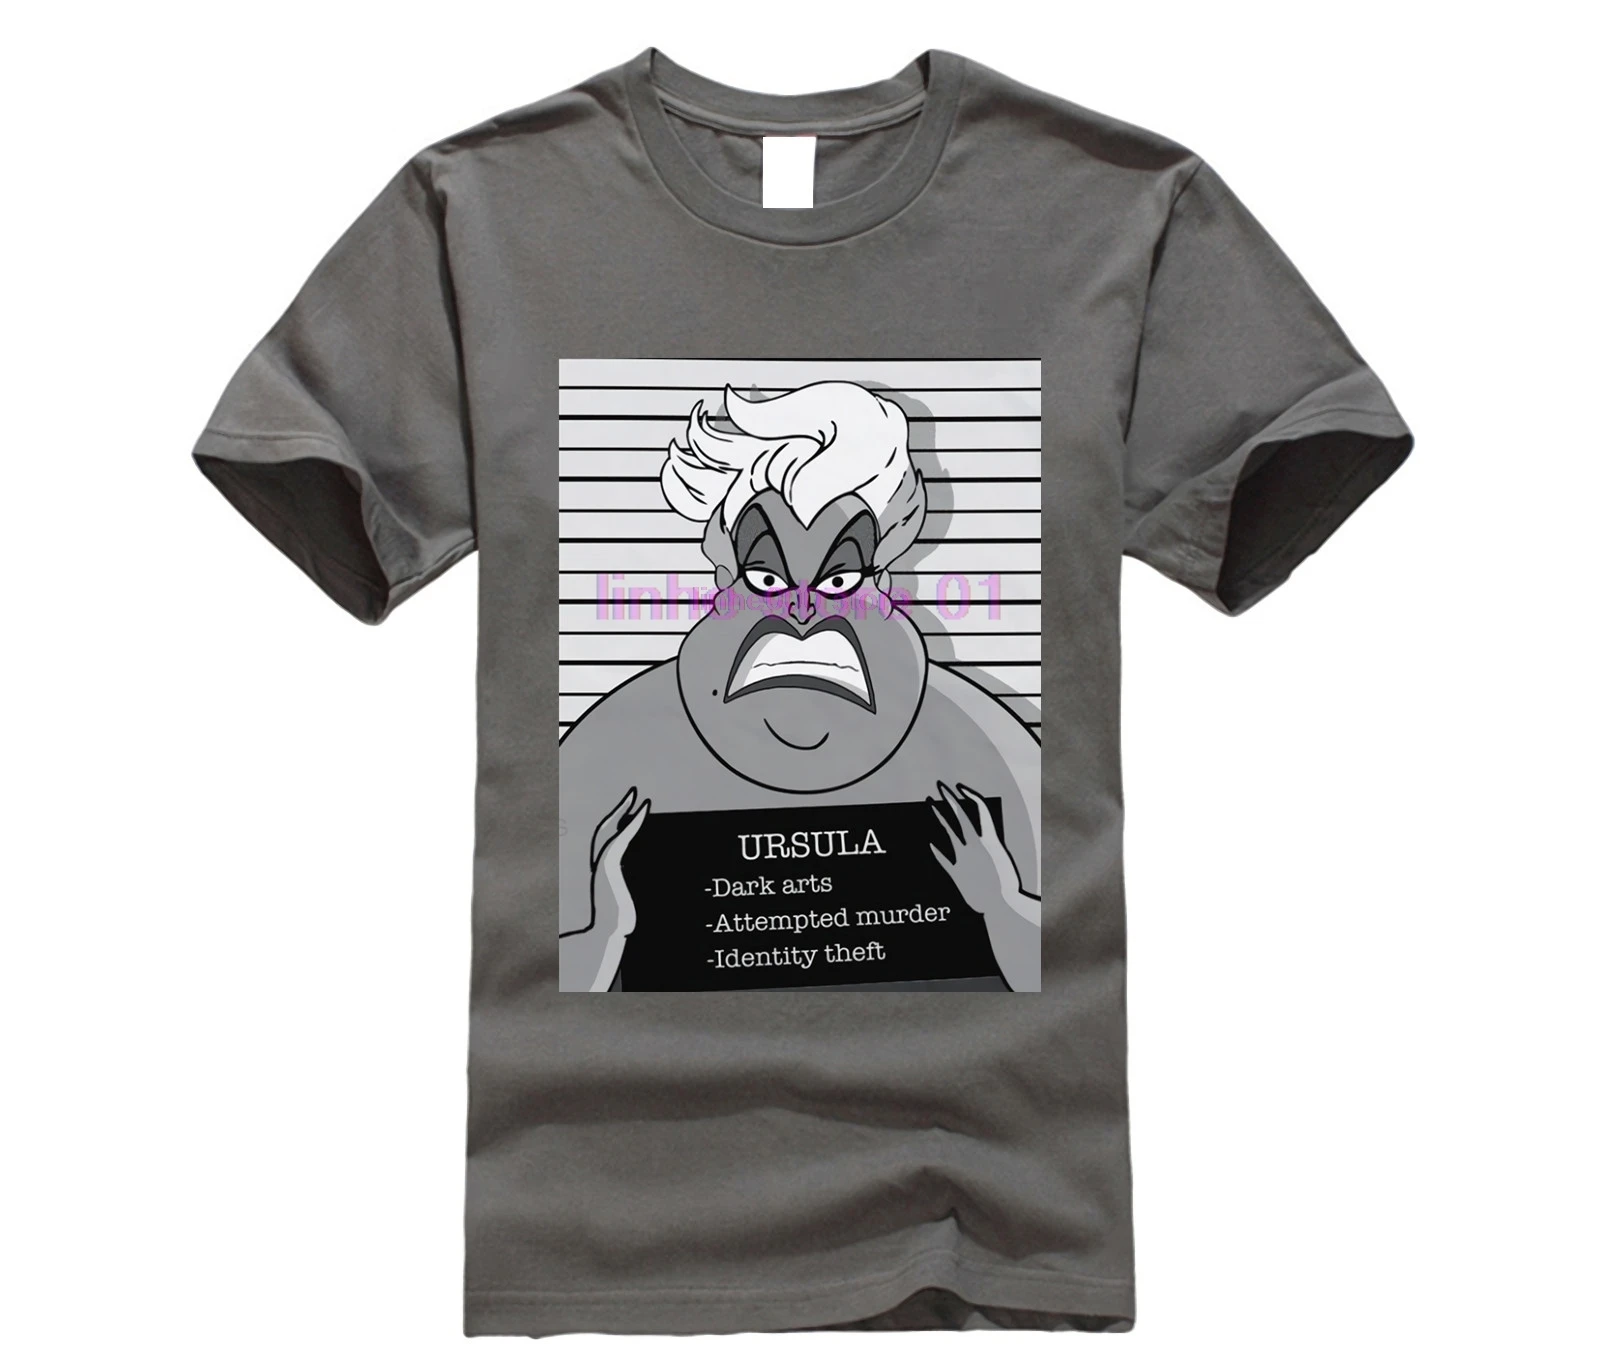 Мужская футболка s Ursula Mugshot, Модная белая забавная футболка, новинка, футболка для мужчин